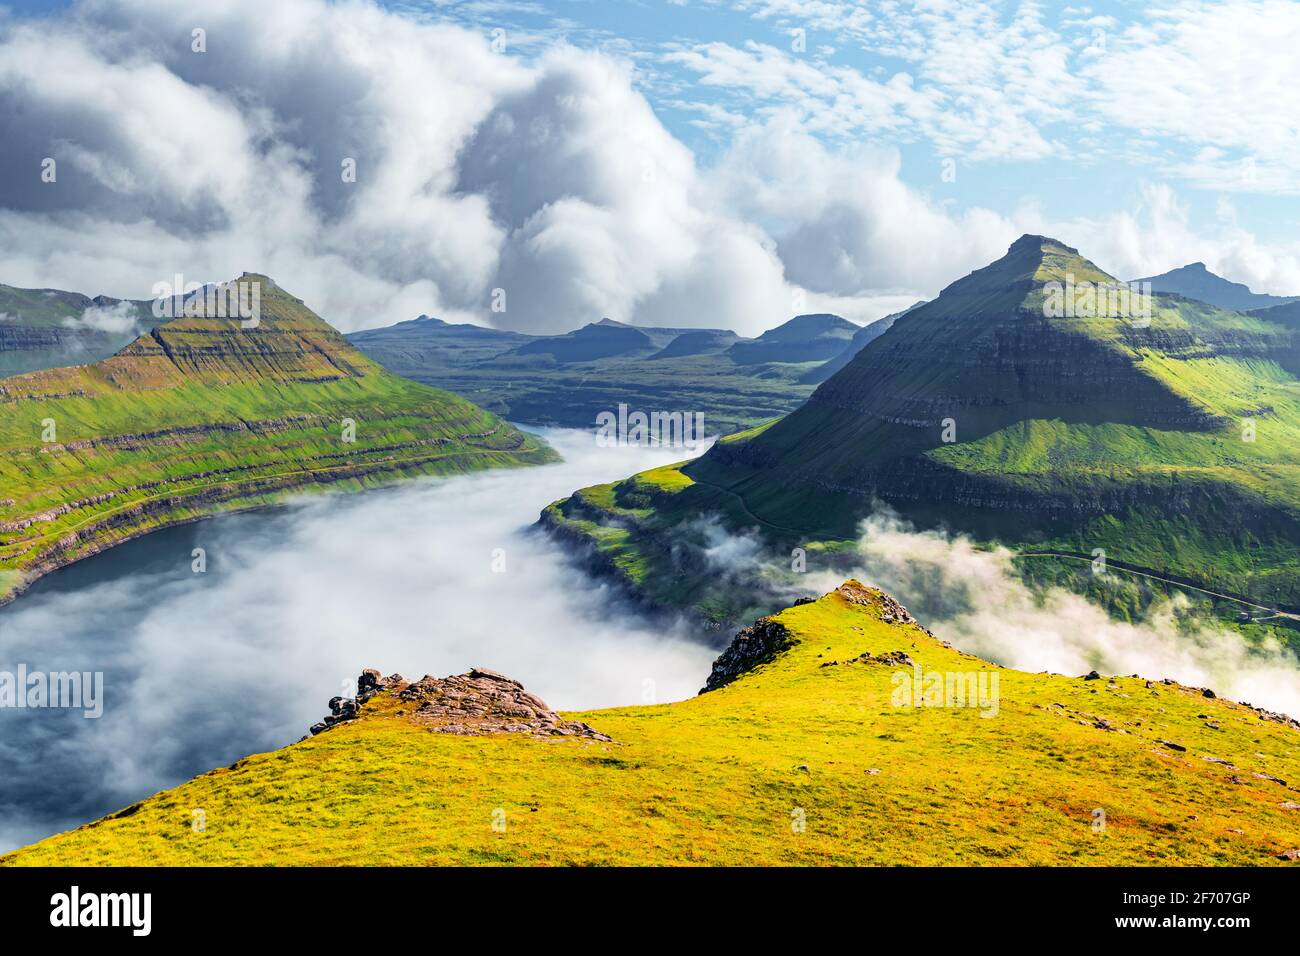 Panorama sur les majestueux fjords ensoleillés de Funningur, île d'Eysturoy, îles Féroé. Photographie de paysage Banque D'Images